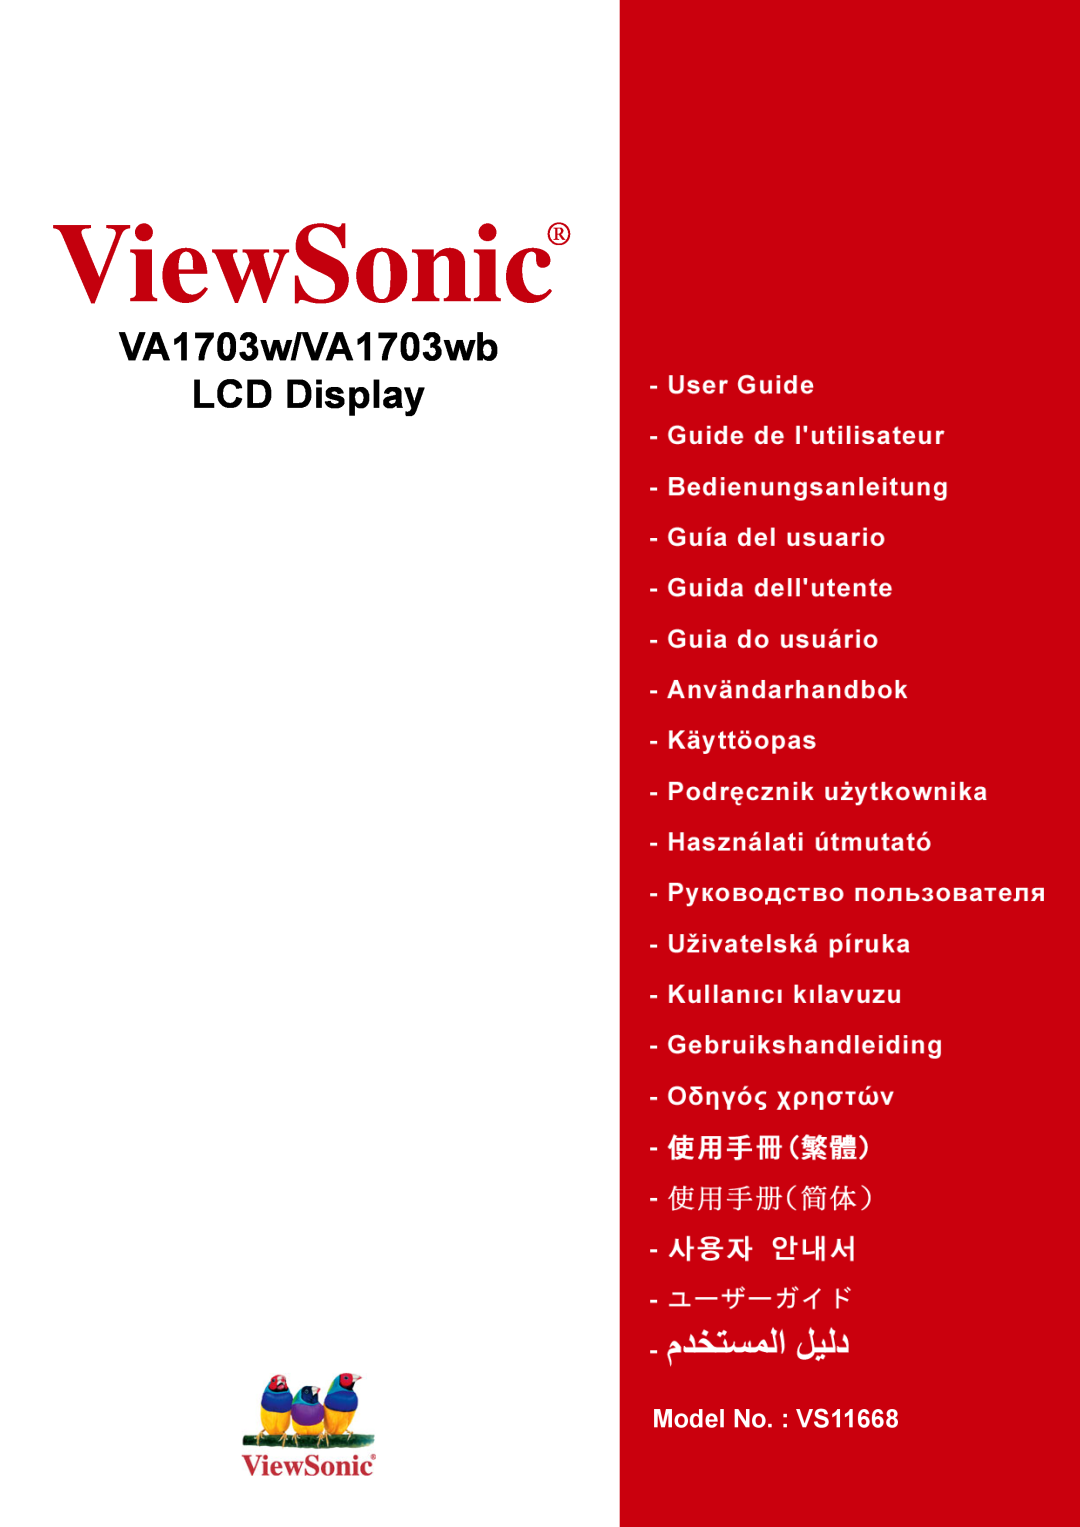 ViewSonic VA1703WB manual ViewSonic, VA1703w/VA1703wb LCD Display, Model No. VS11668 